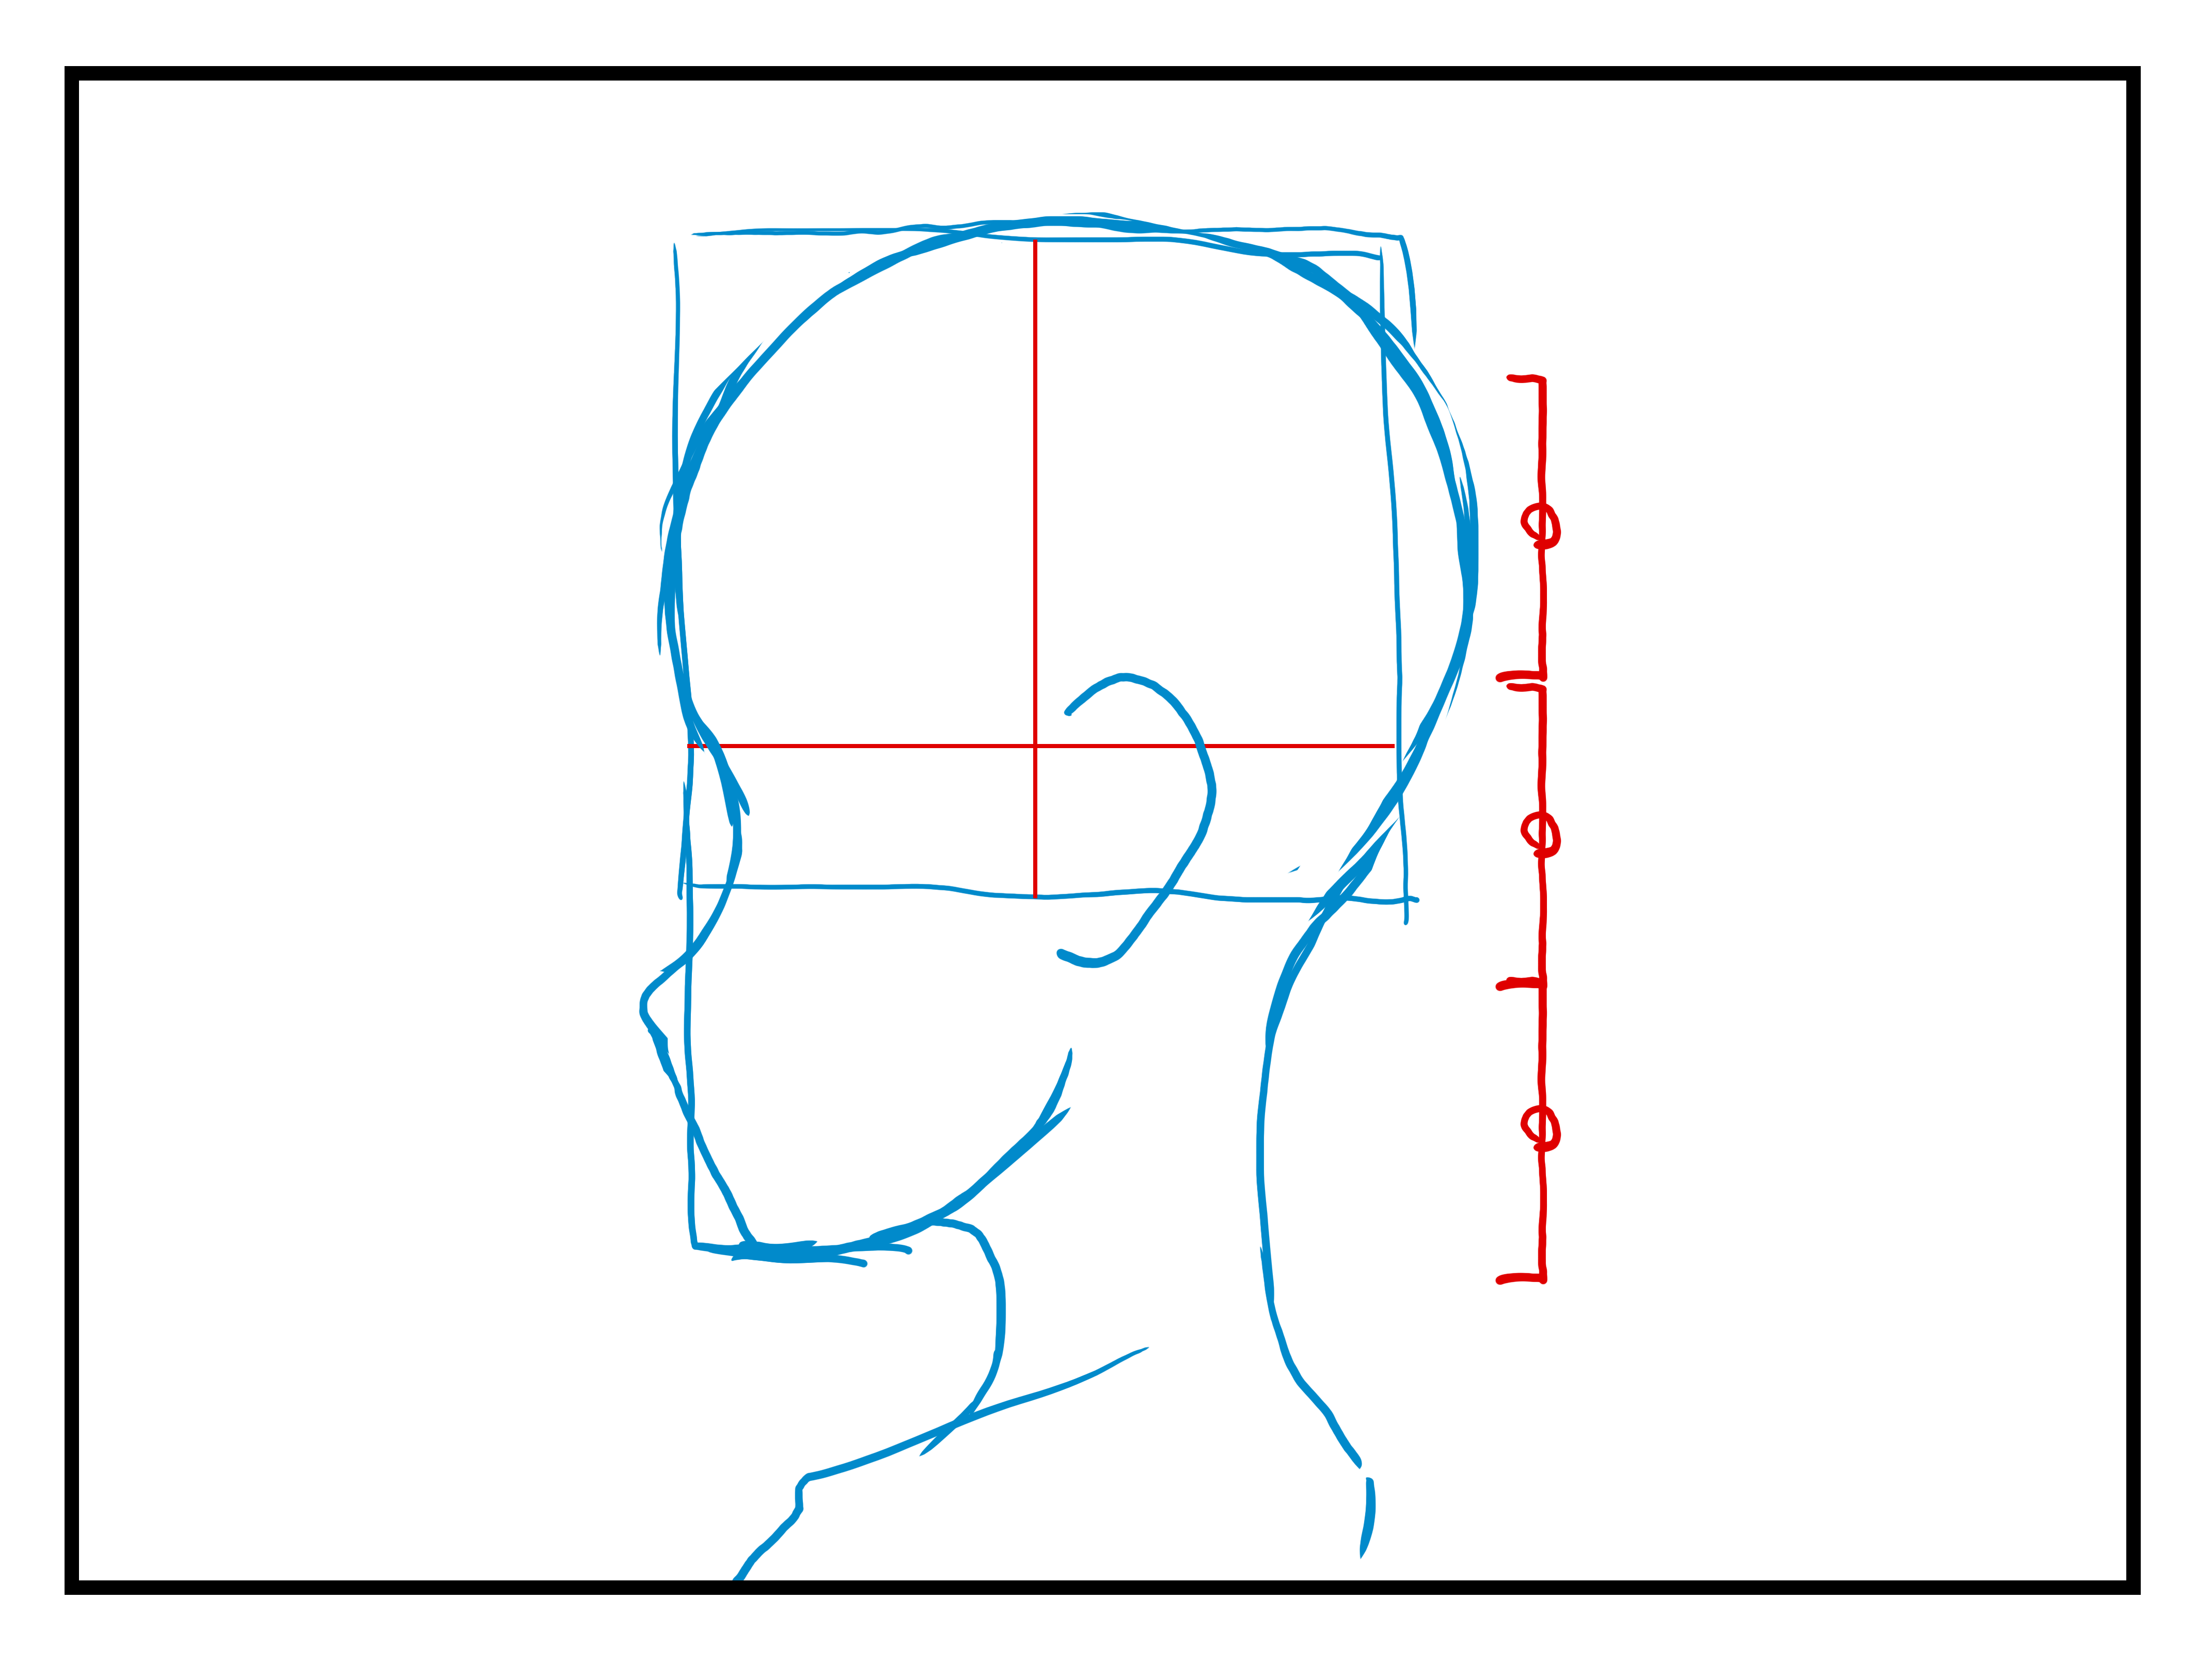 耳の大きさと位置について 漫画 イラストの人物キャラクター描画 Tips